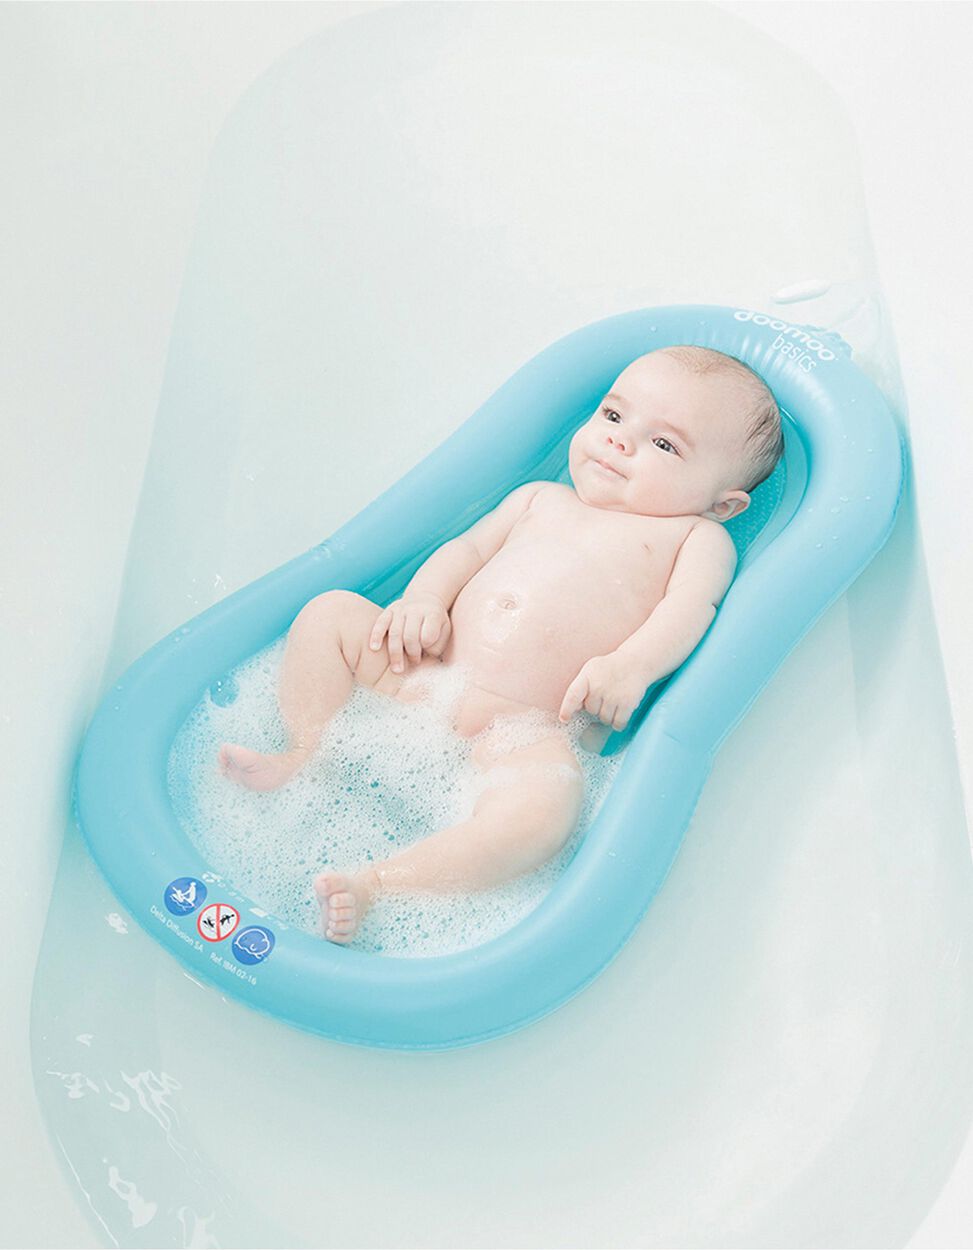 Надувная ванна для купания. Матрасик для купания. Матрас для купания новорожденных. Надувной матрас для купания новорожденных. Горка для купания младенцев.